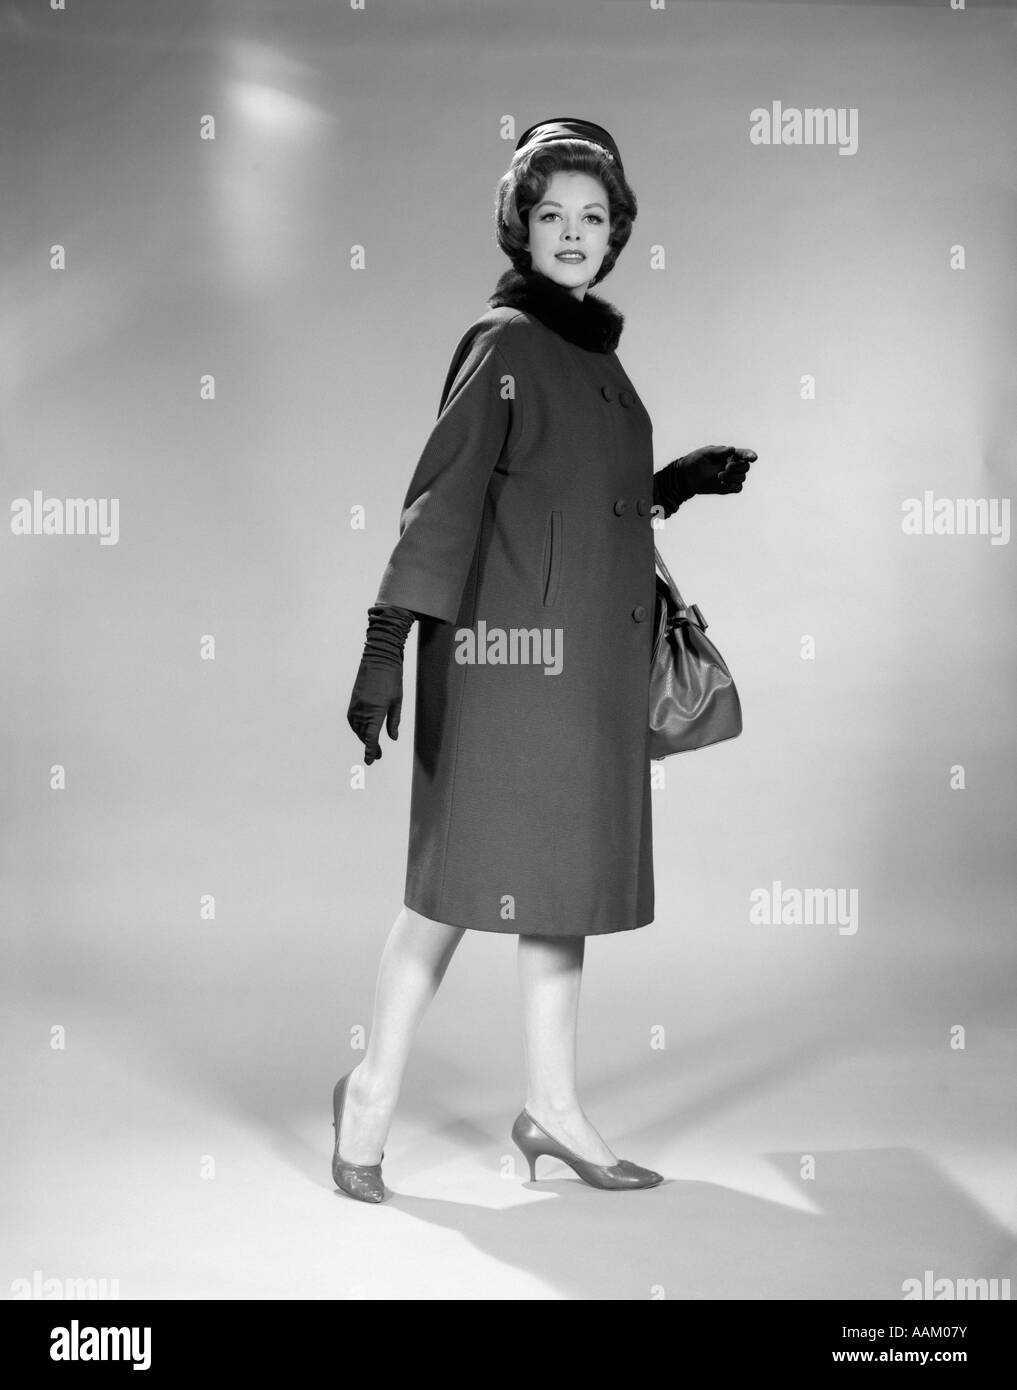 1960 Femme pleine longueur TAMBOURIN HAT MANTEAU Col de Fourrure Gants de sac à main chaussures talon haut STUDIO PORTRAIT LOOKING AT CAMERA Banque D'Images